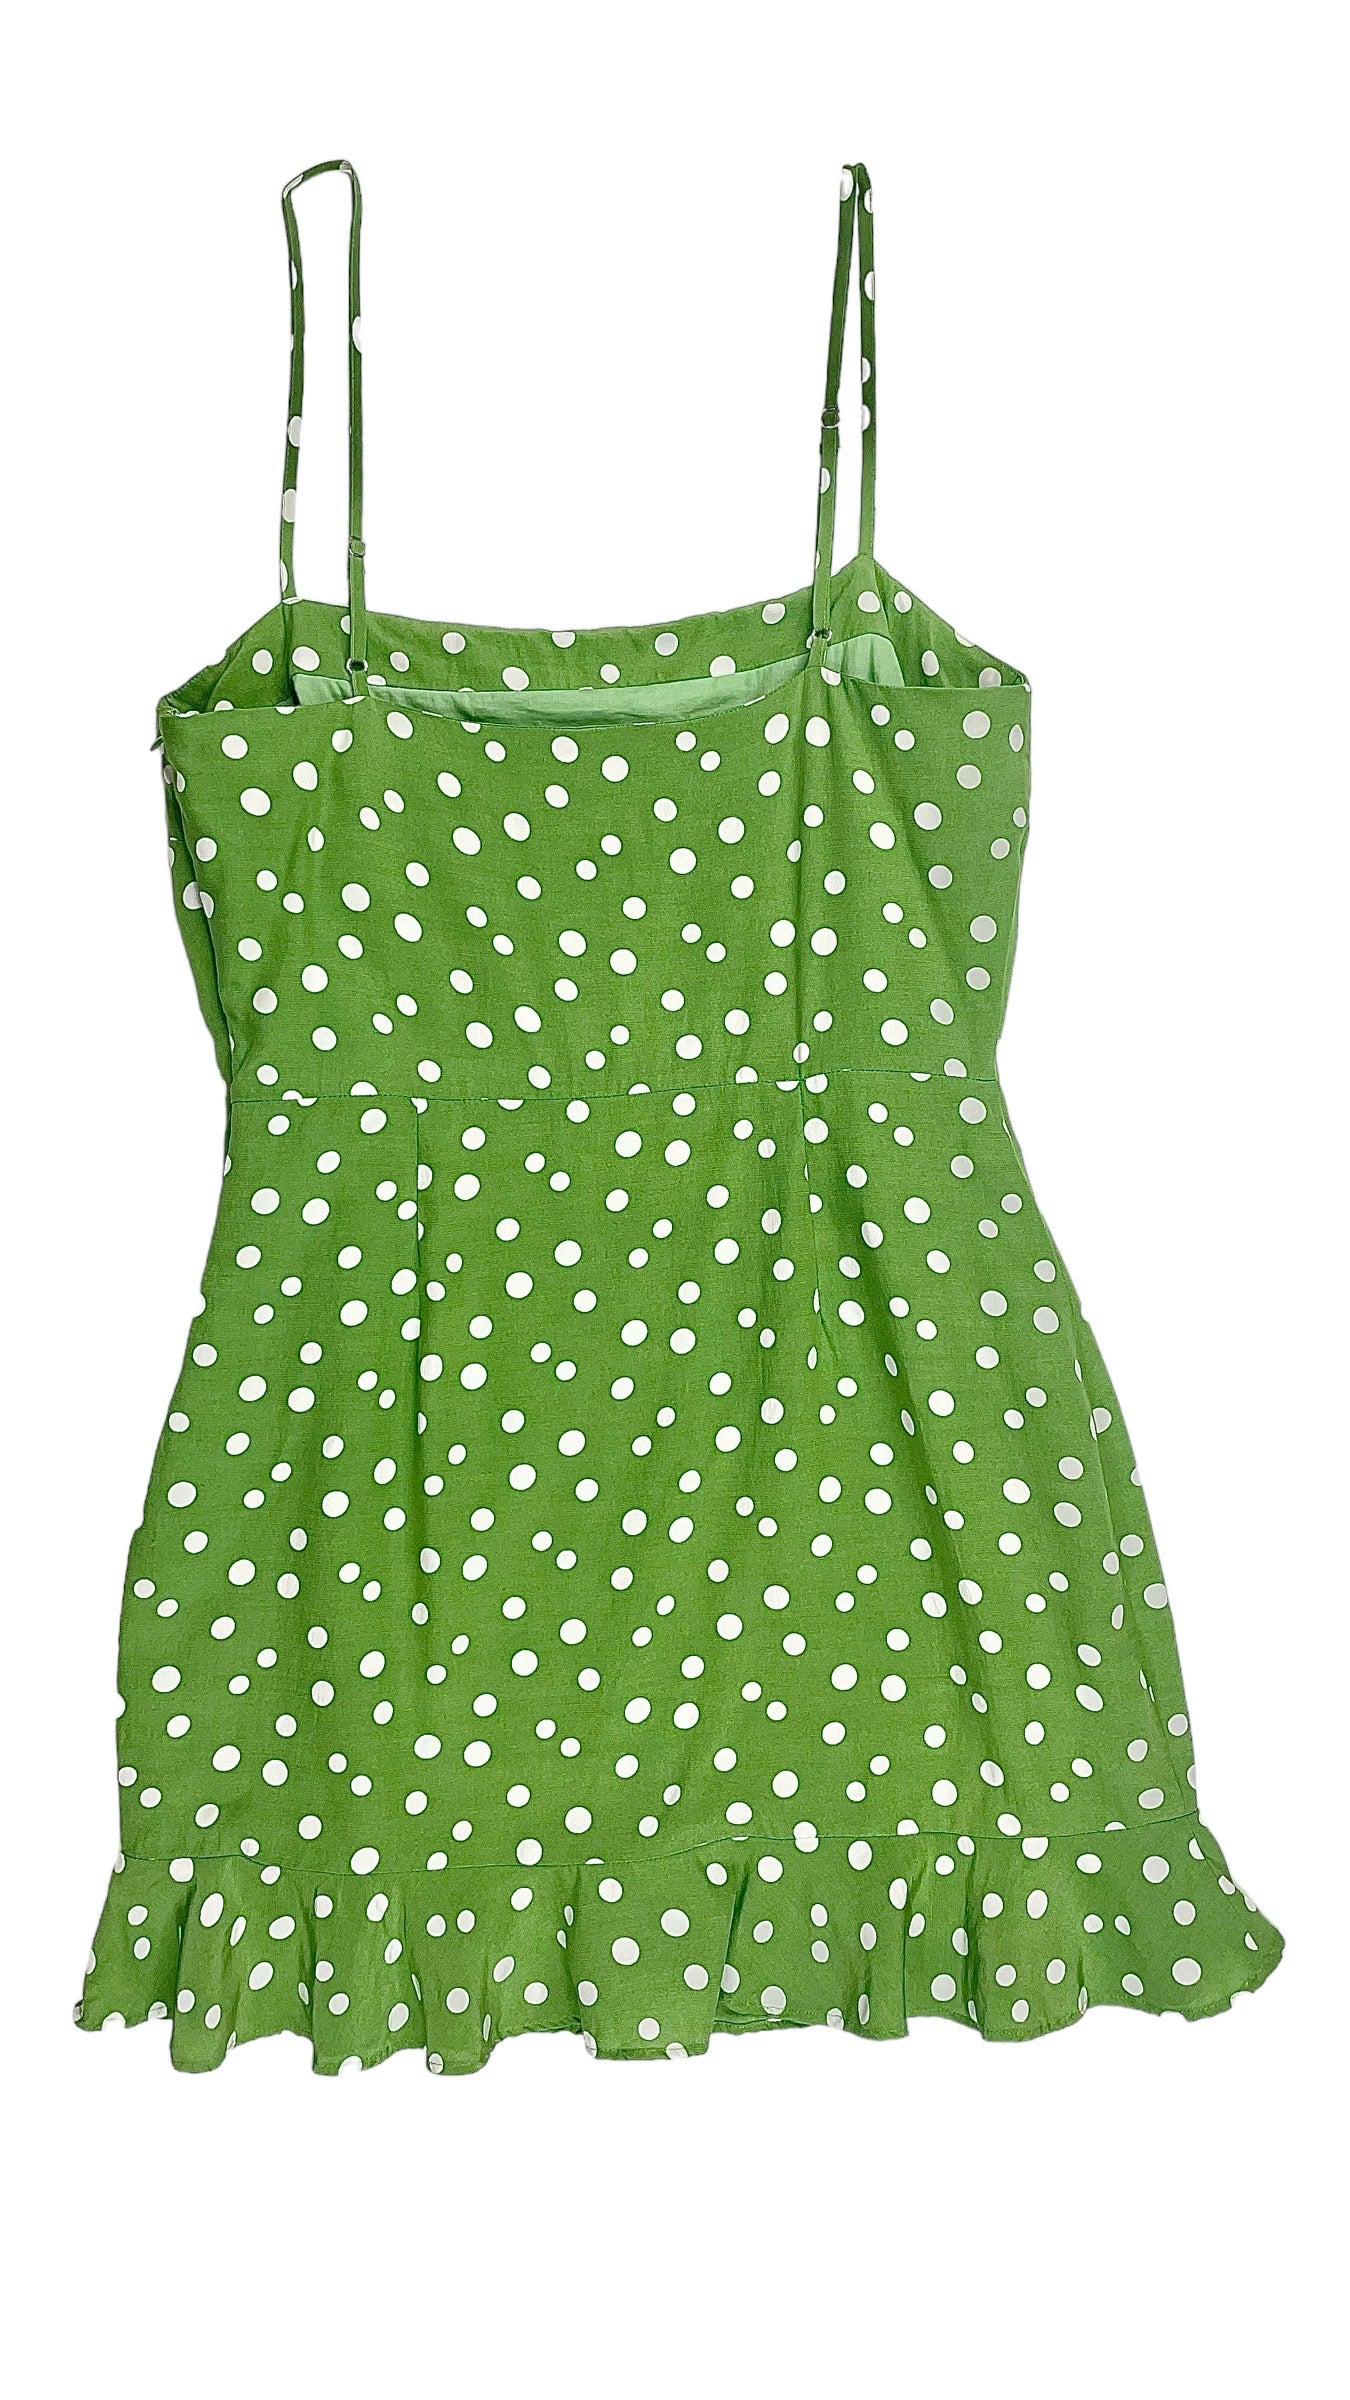 Pre-Loved PRIVACY PLEASE green polka dot mini tank dress - Size S